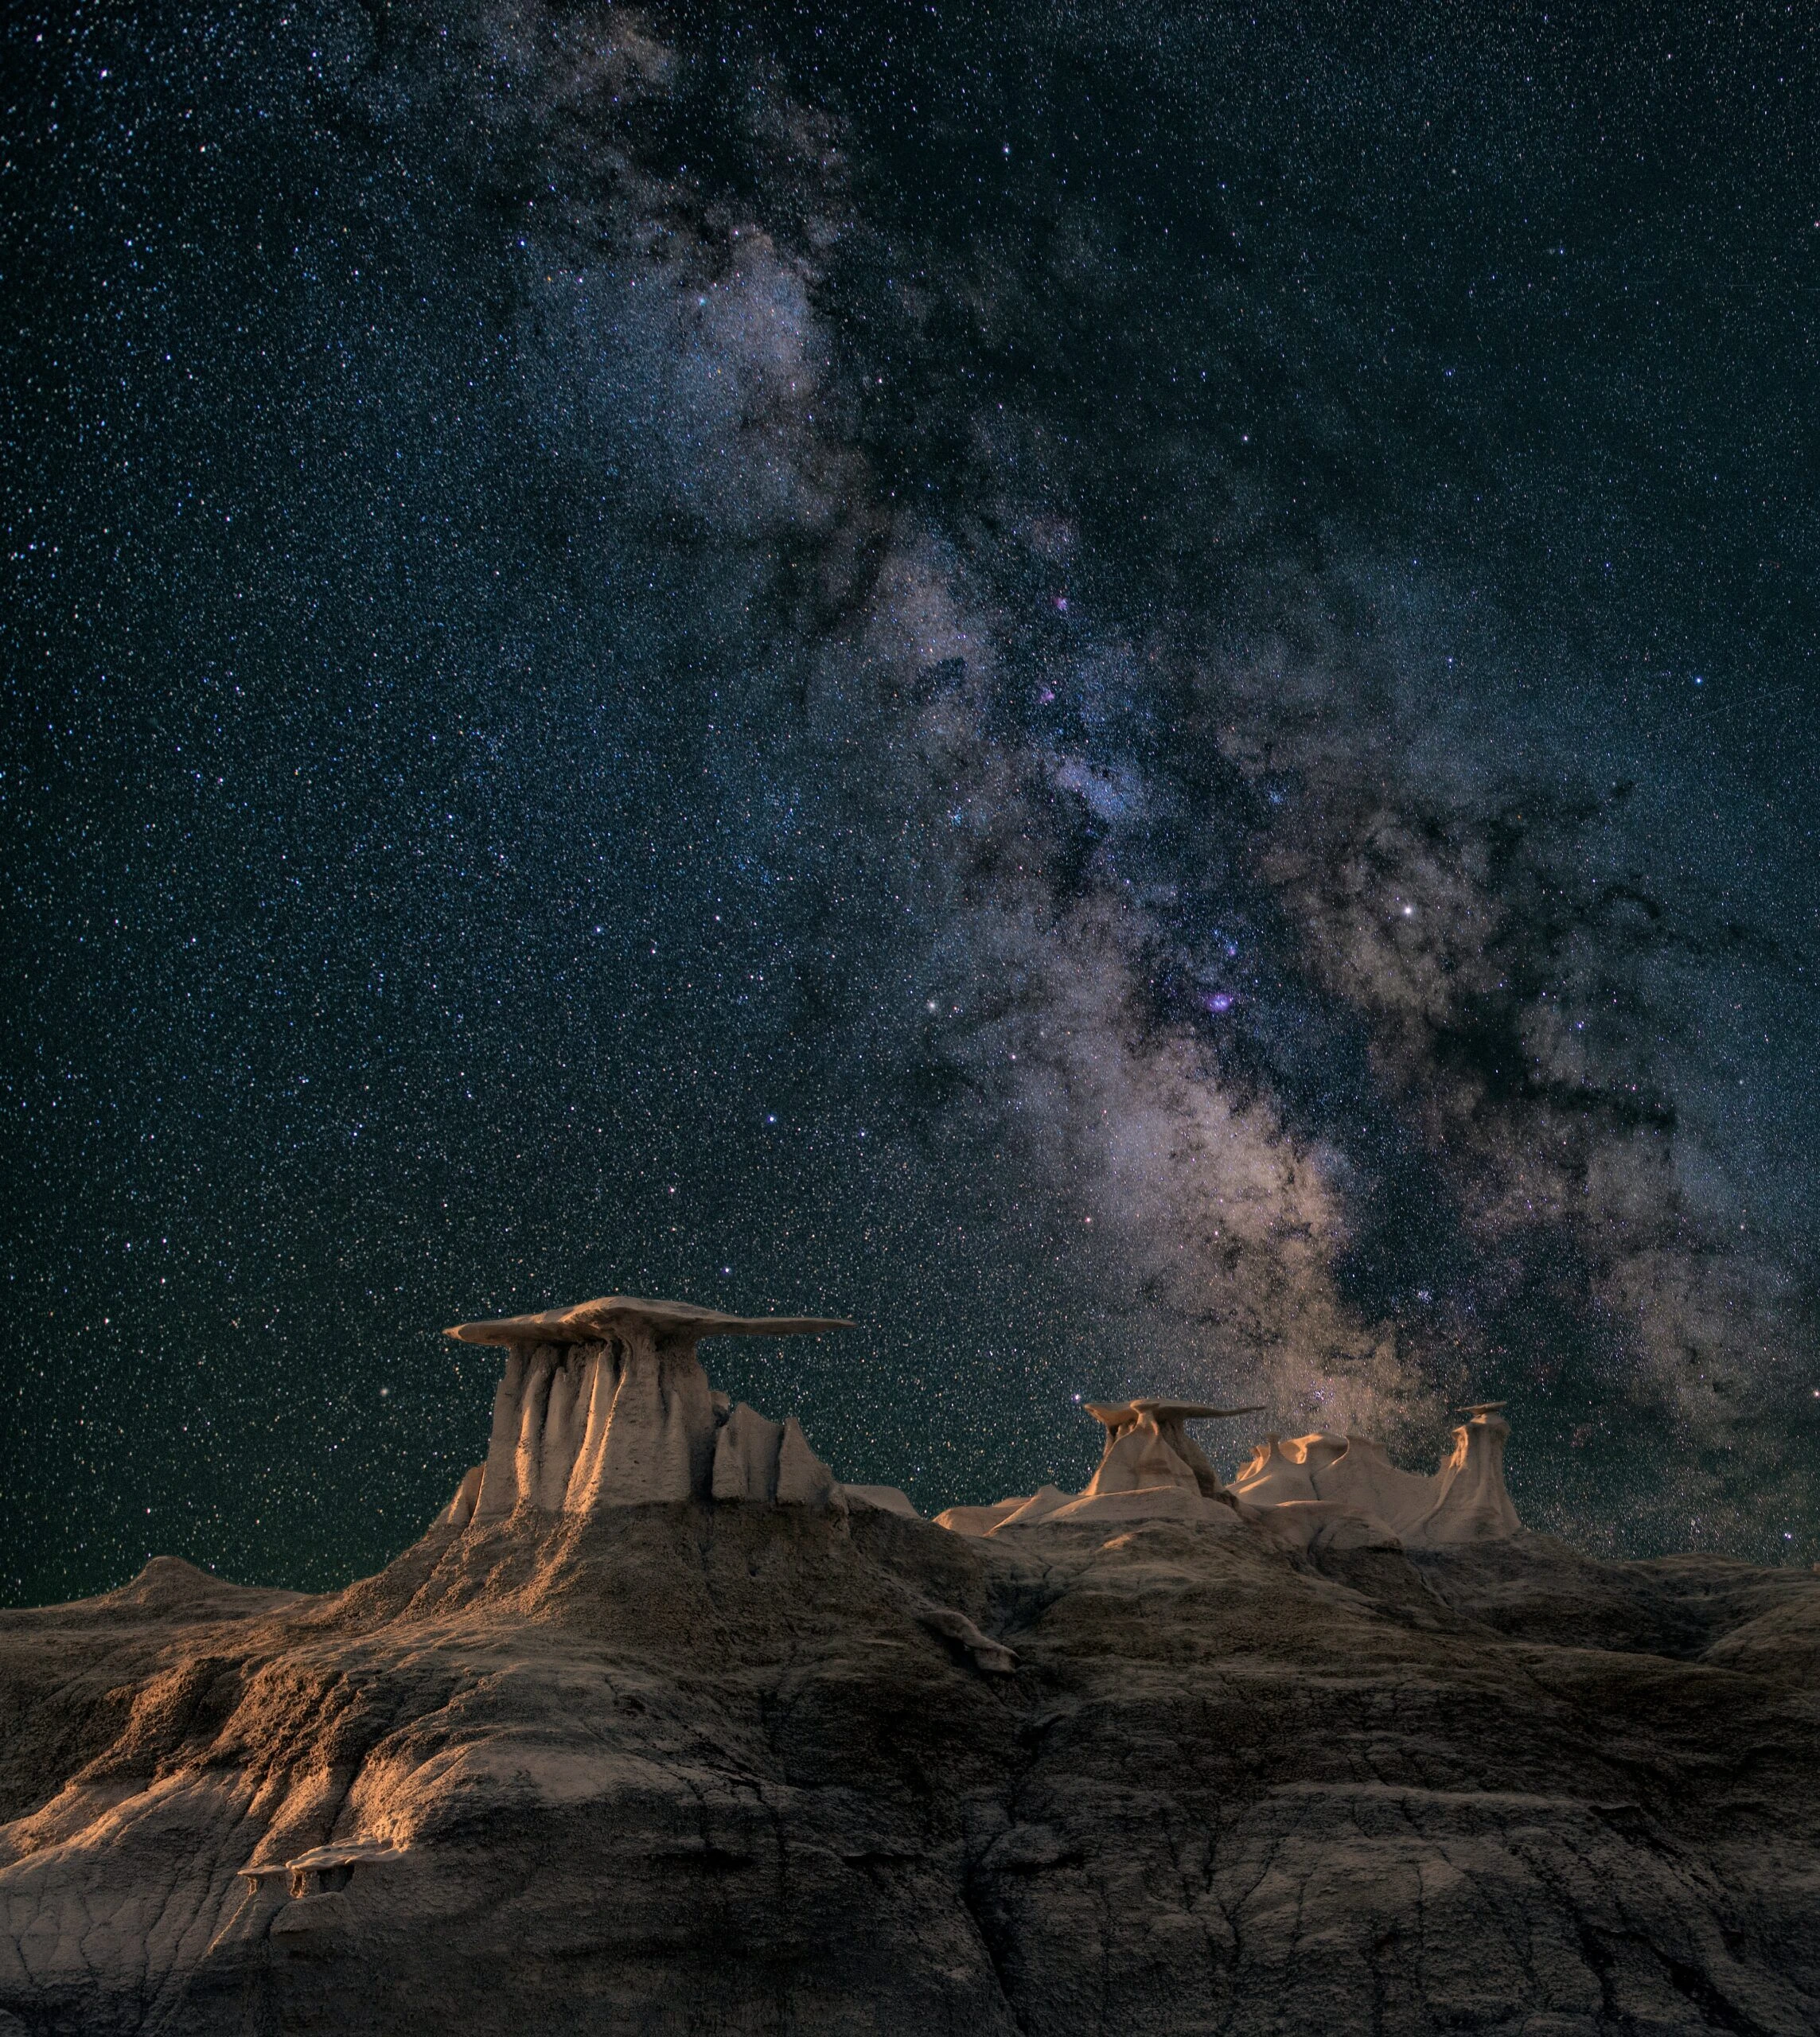 john-fowler-Aurora australis' starry sky over desert landscape-unsplash